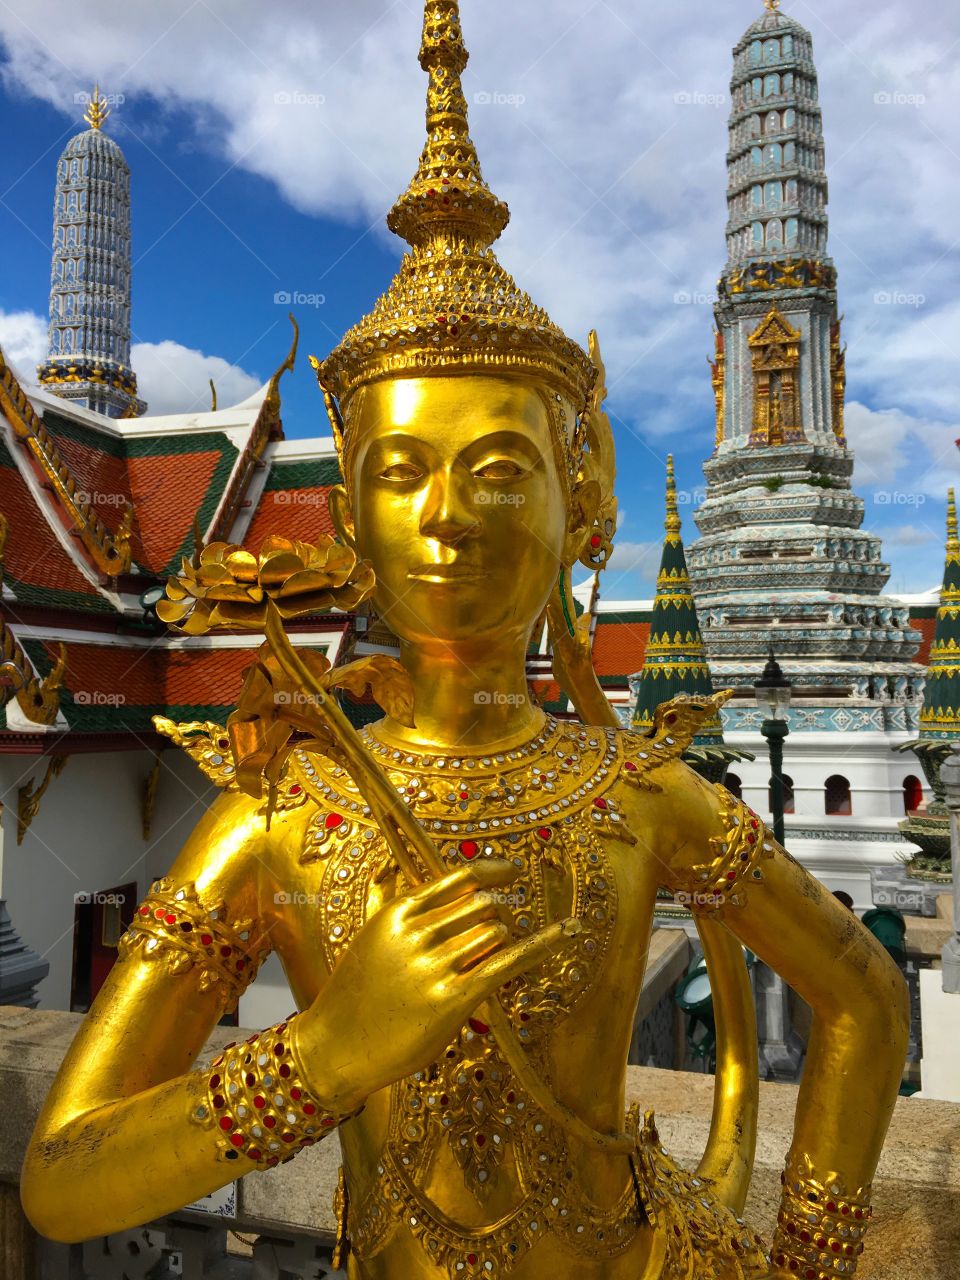 Grand Palace / Bangkok Thailand 67